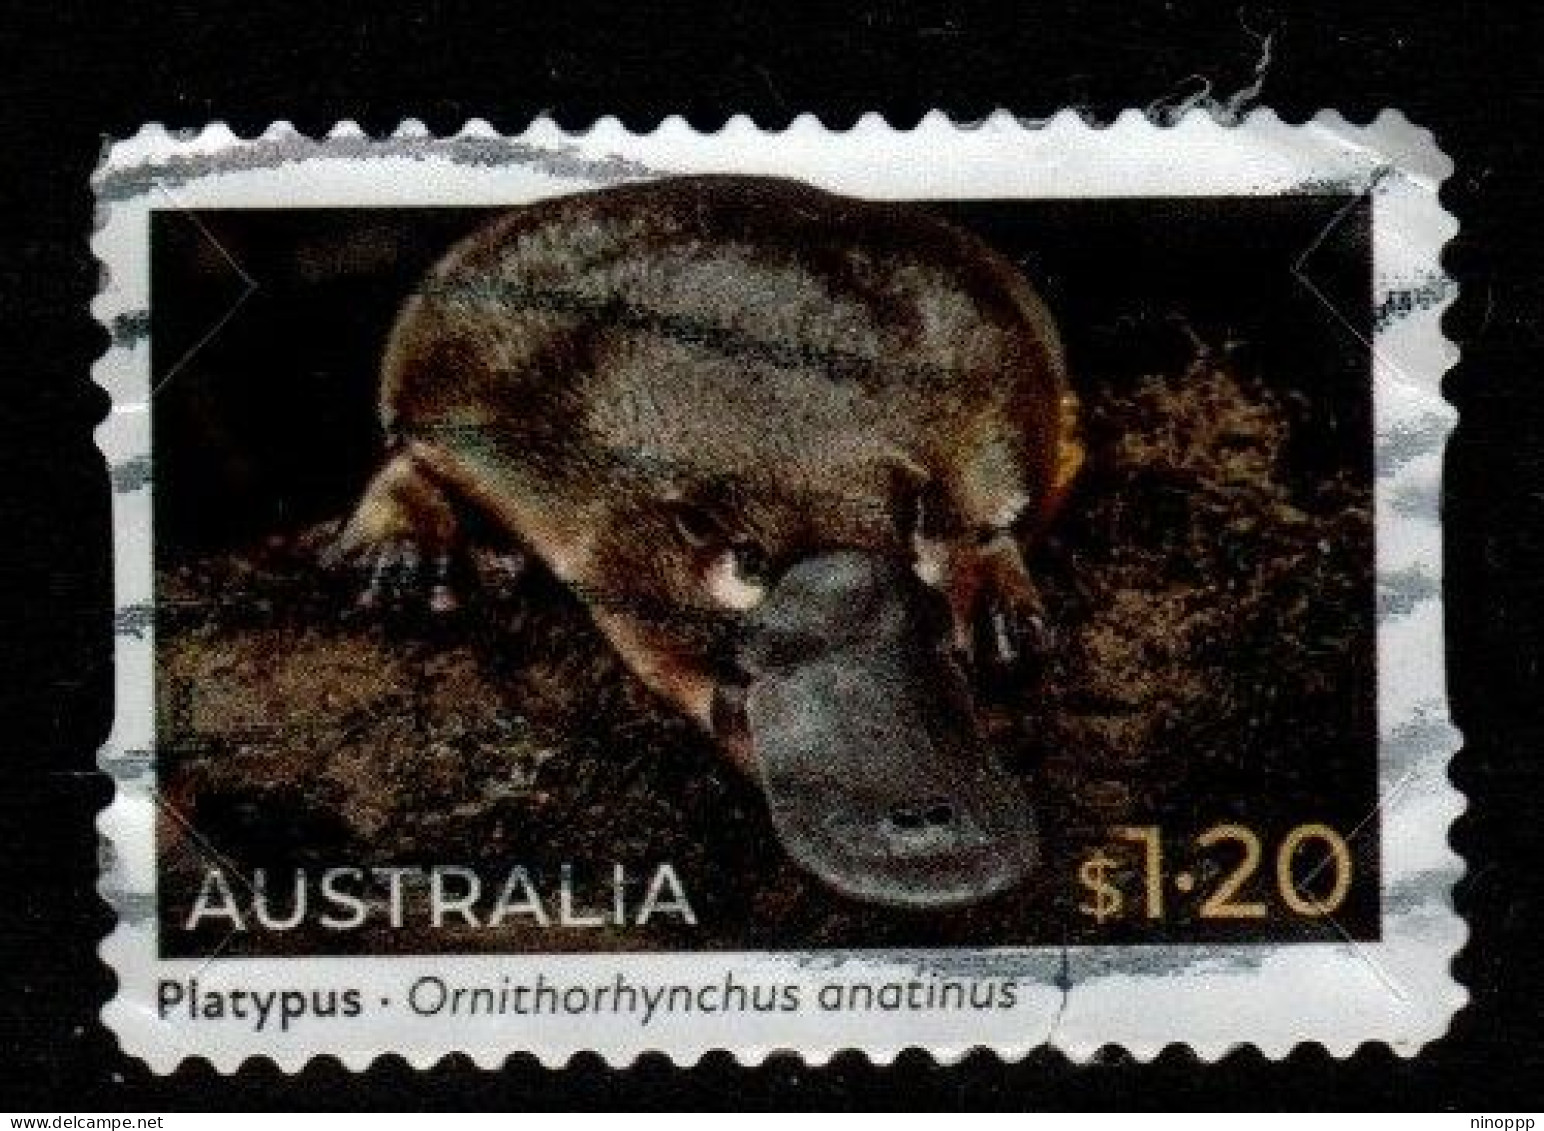 Australia Cat 4157 2022 Fauna $ 1.20 Platypust,used - Used Stamps